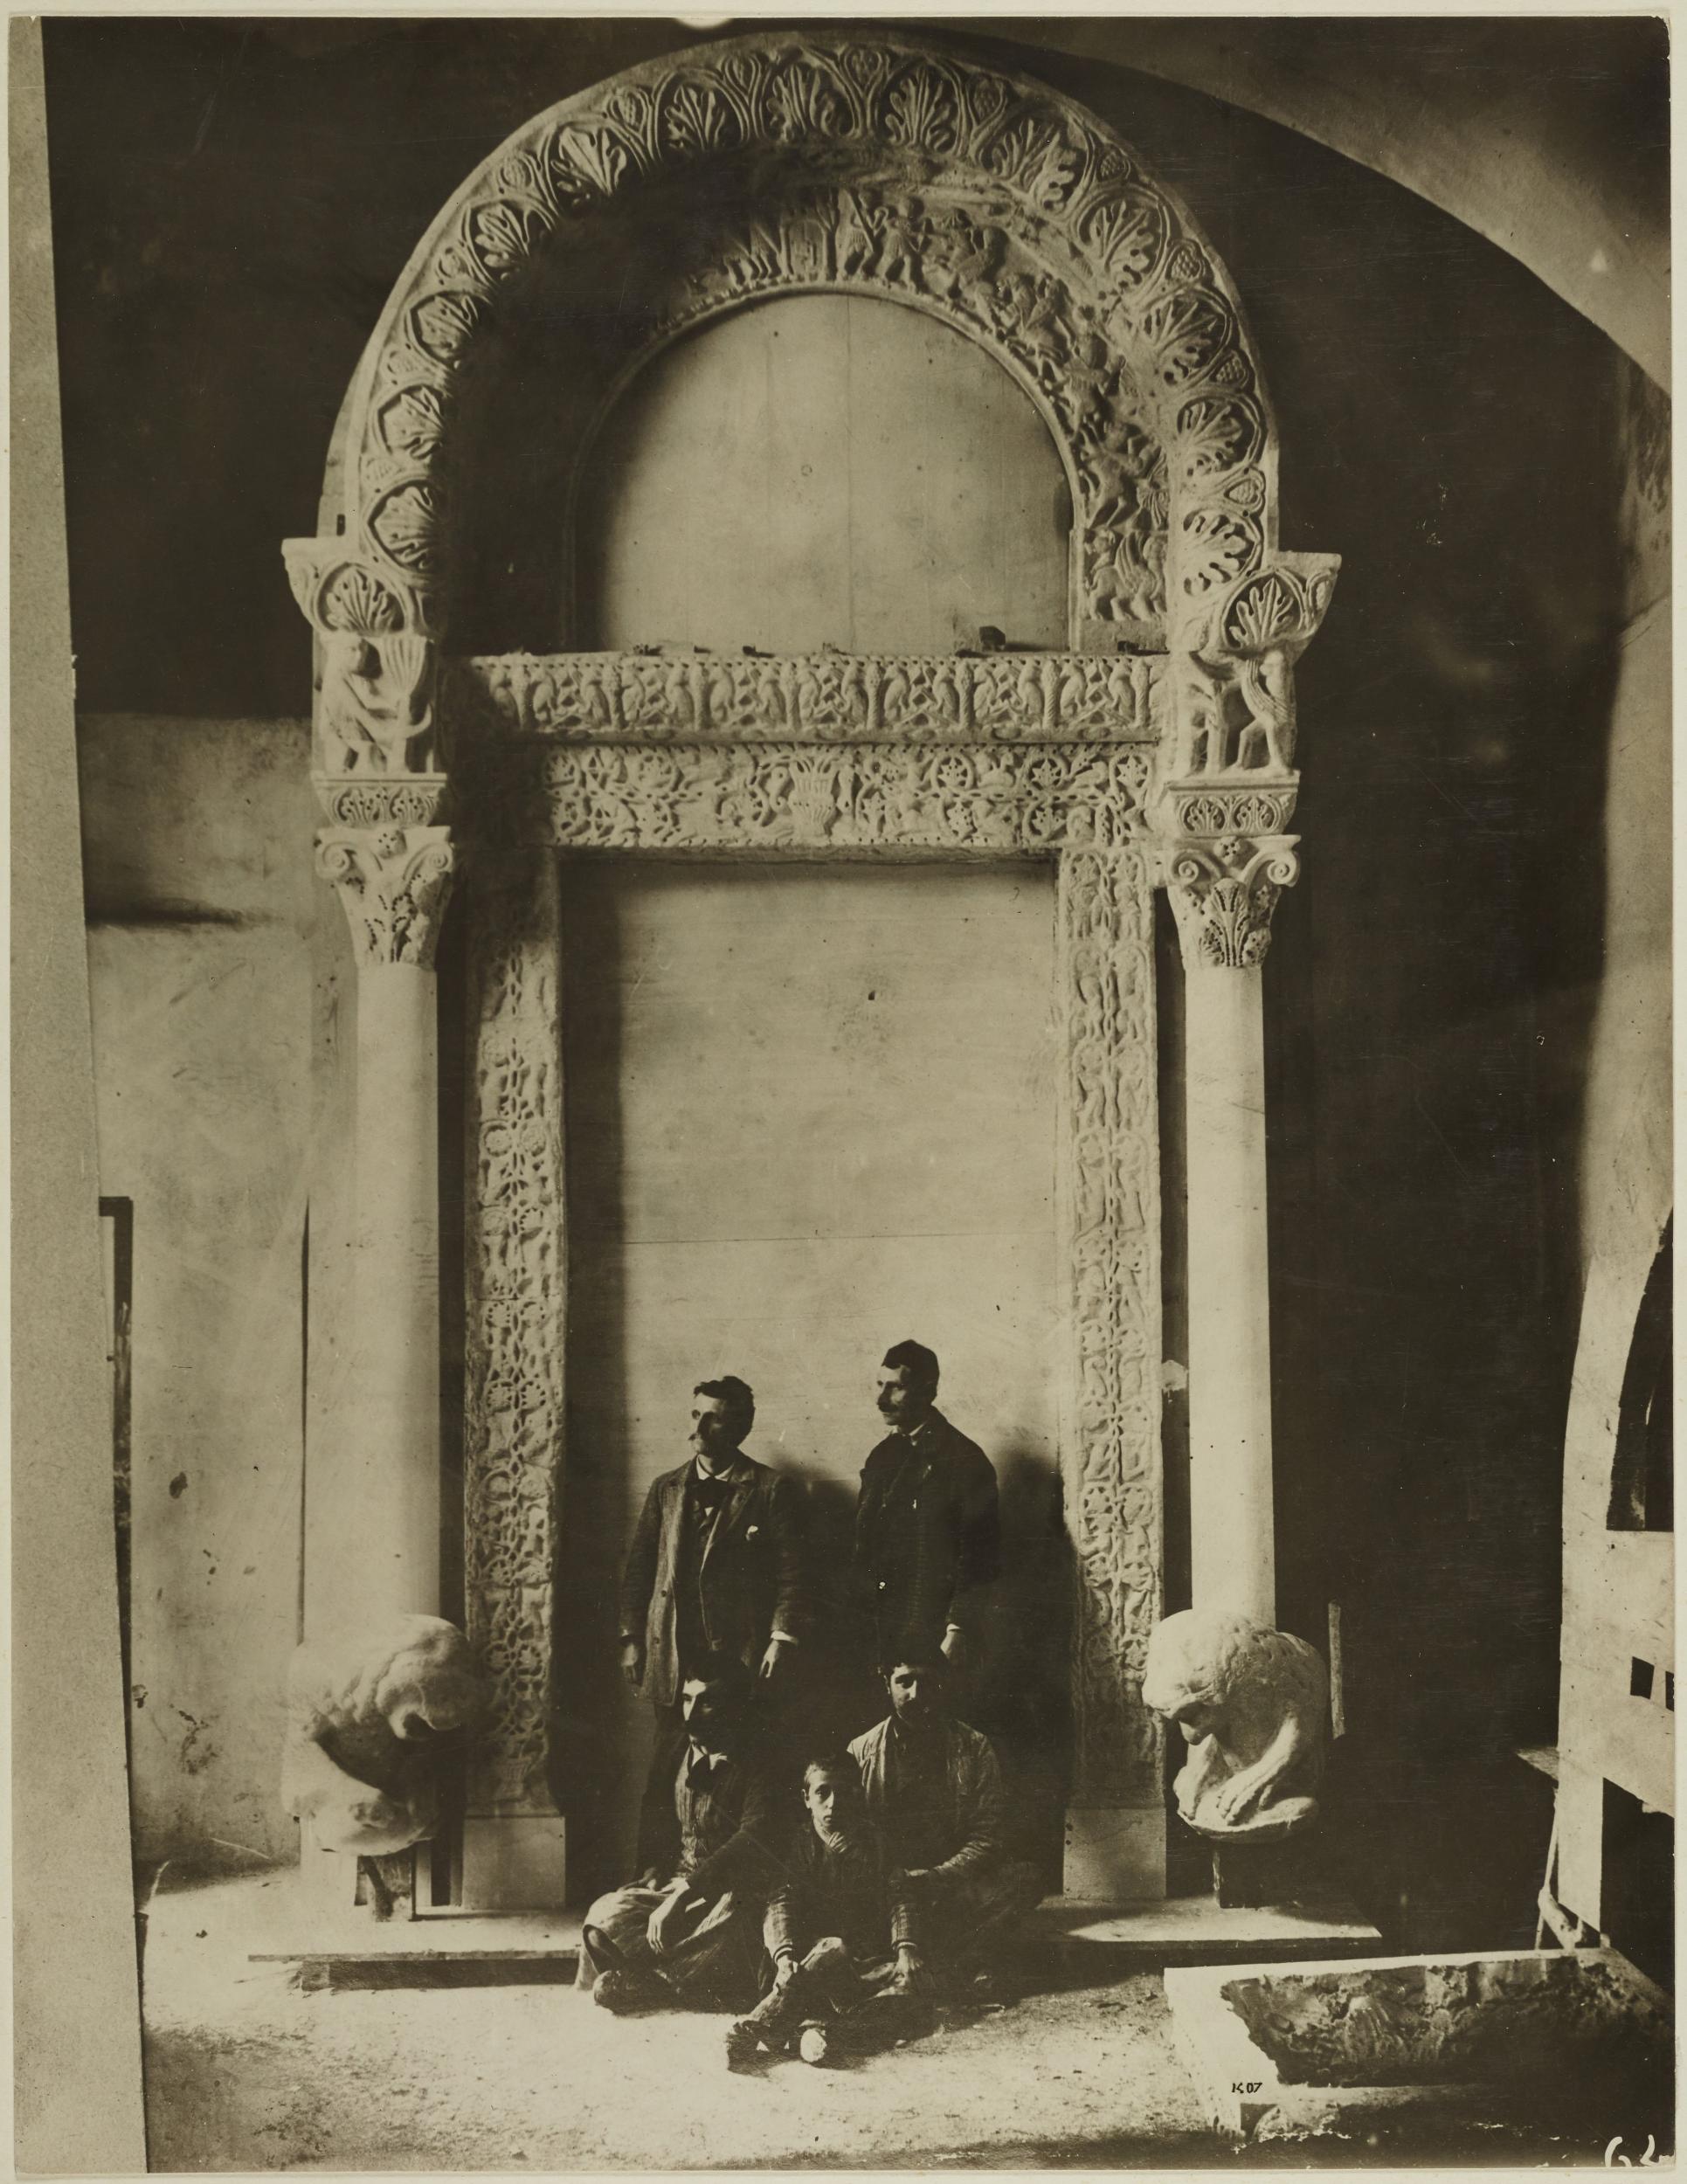 Fotografo non identificato, Bari - Castello Svevo, gipsoteca, calco di portale scolpito, 1923 post, gelatina ai sali d'argento/carta, MPI136587